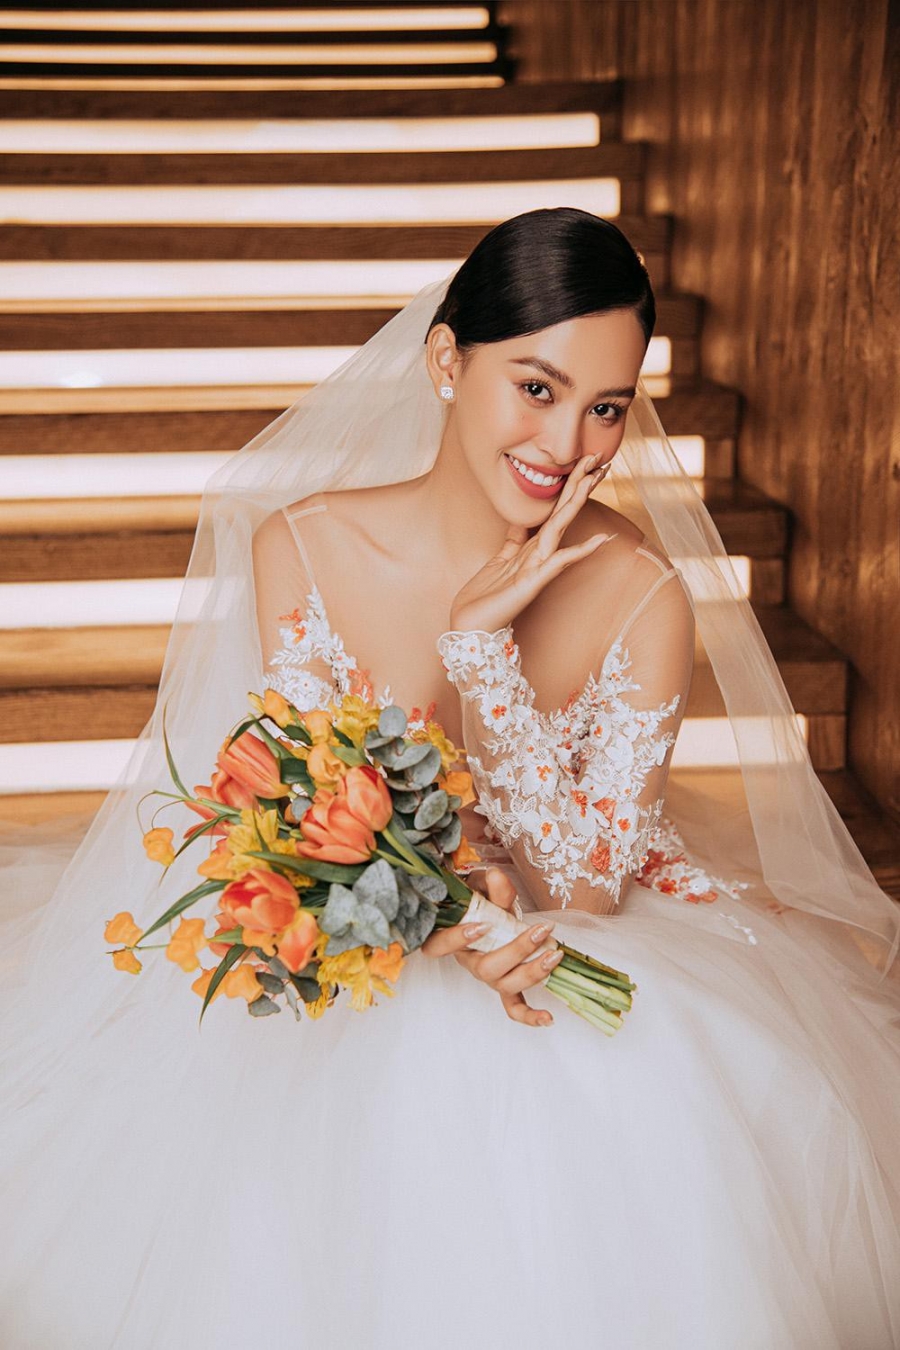 Hoa hậu Tiểu Vy là cô dâu tiếp theo của showbiz sau Minh Hằng, Khánh Thi - Ảnh 5